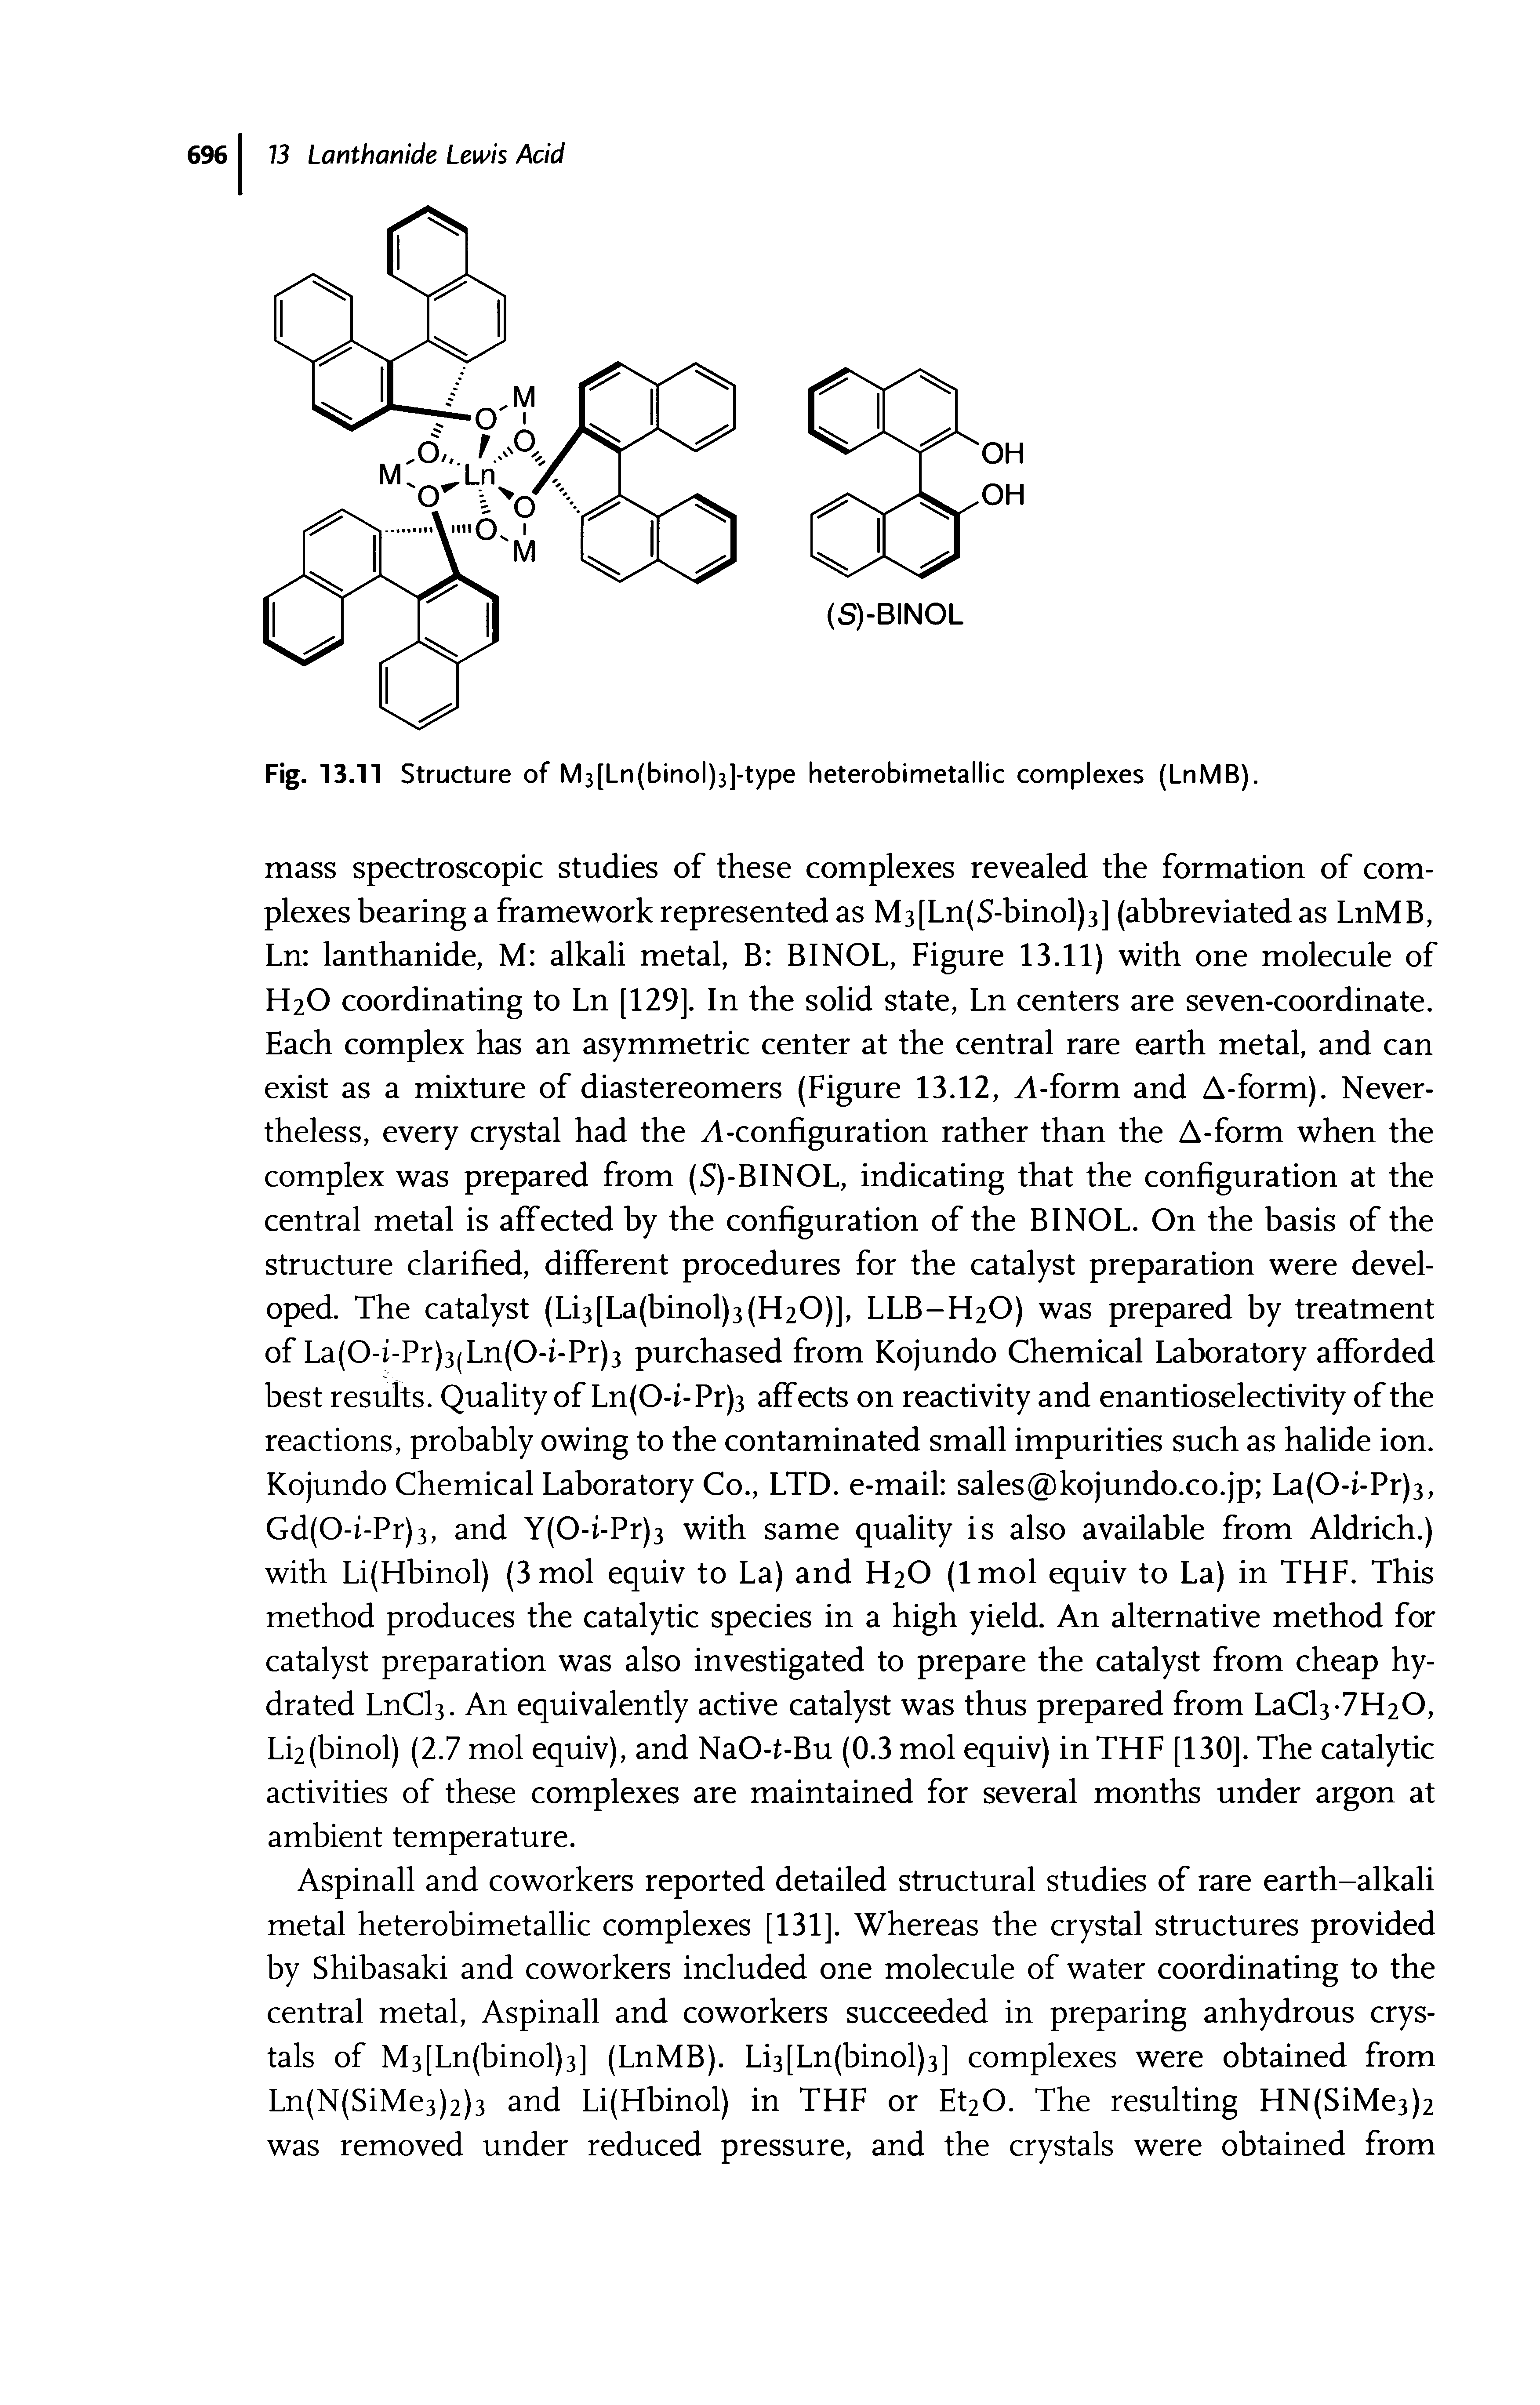 Fig. 13.11 Structure of M3[Ln(binol)3)-type heterobimetallic complexes (LnMB).